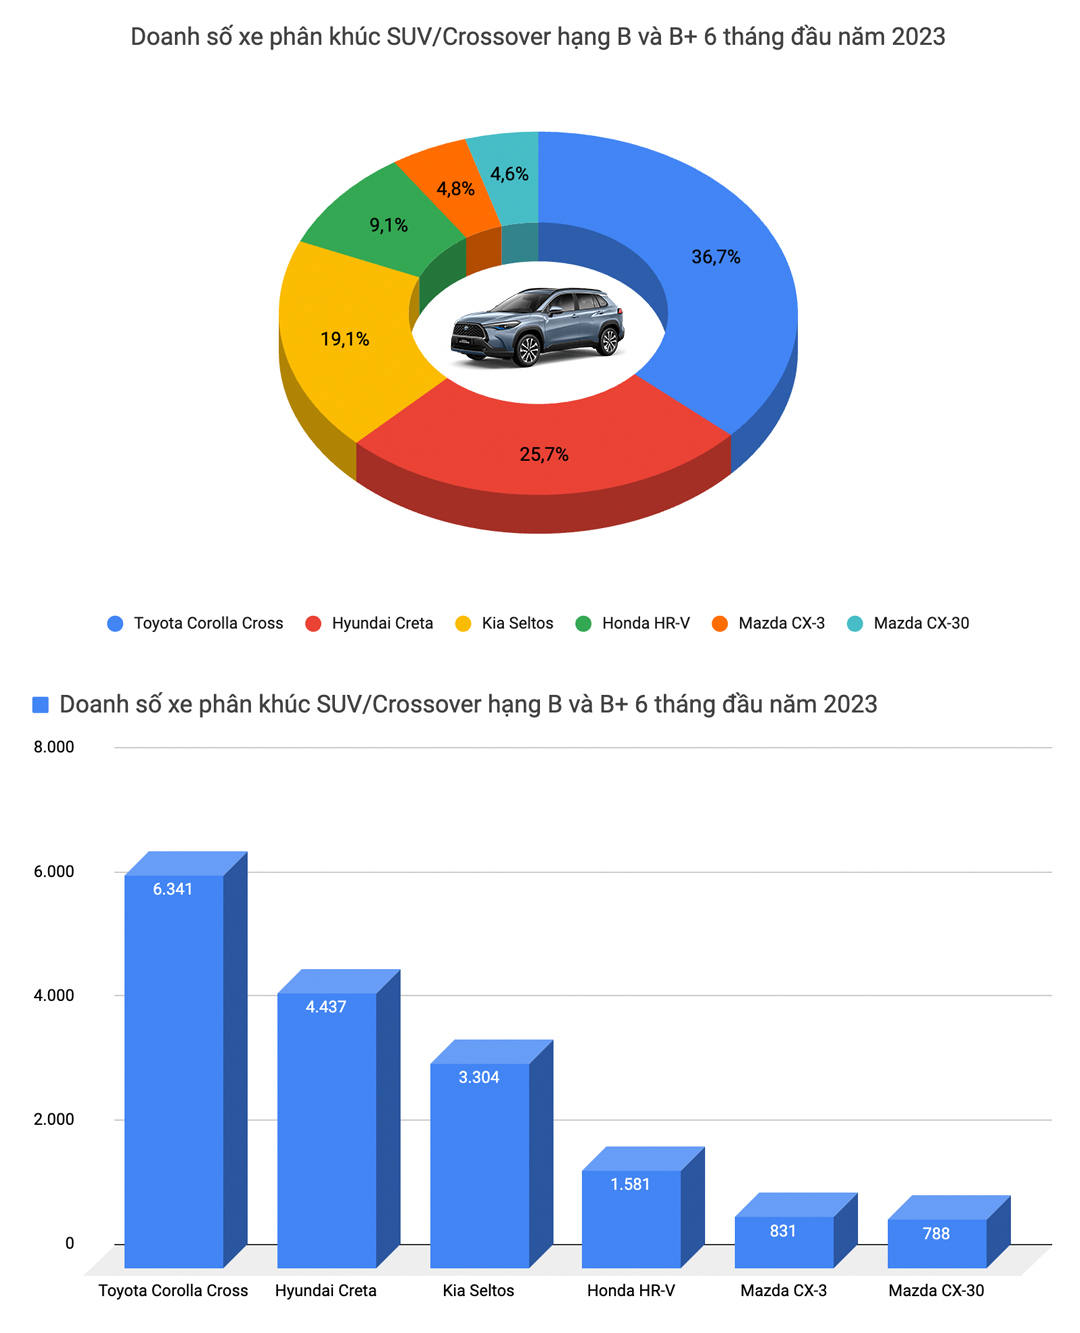 Mitsubishi Xpander bán chạy nhất Việt Nam và 9 ông vua doanh số từng phân khúc nửa đầu 2023 - Ảnh 9.